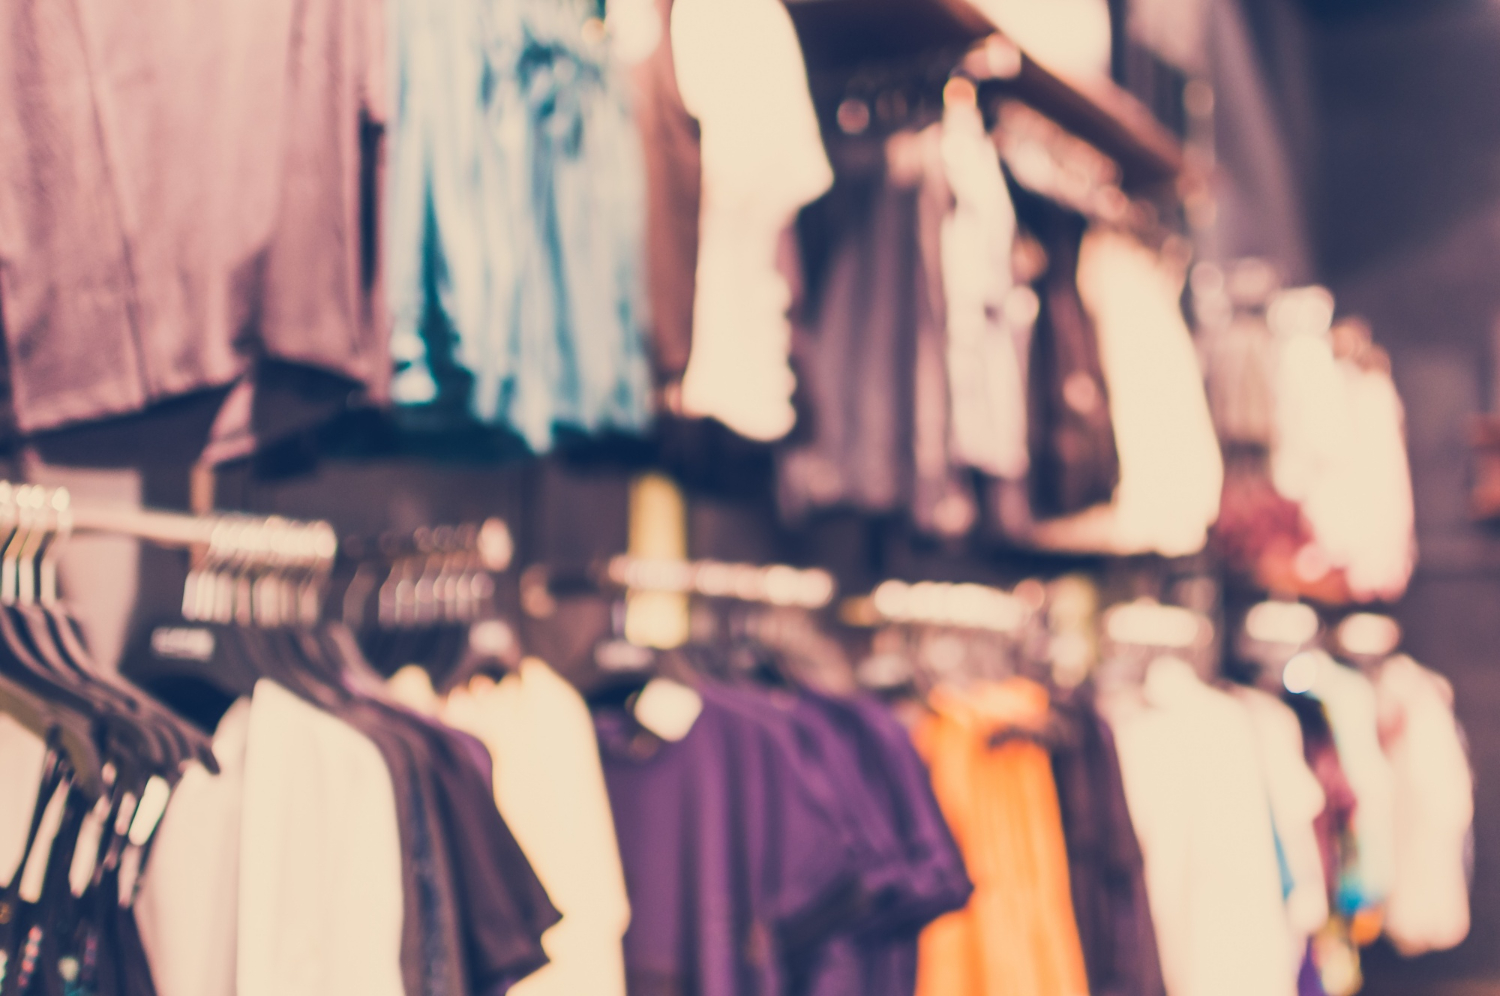 setor de vestuário foi um dos que caiu no Índice de Preços ao Consumidor - Semanal